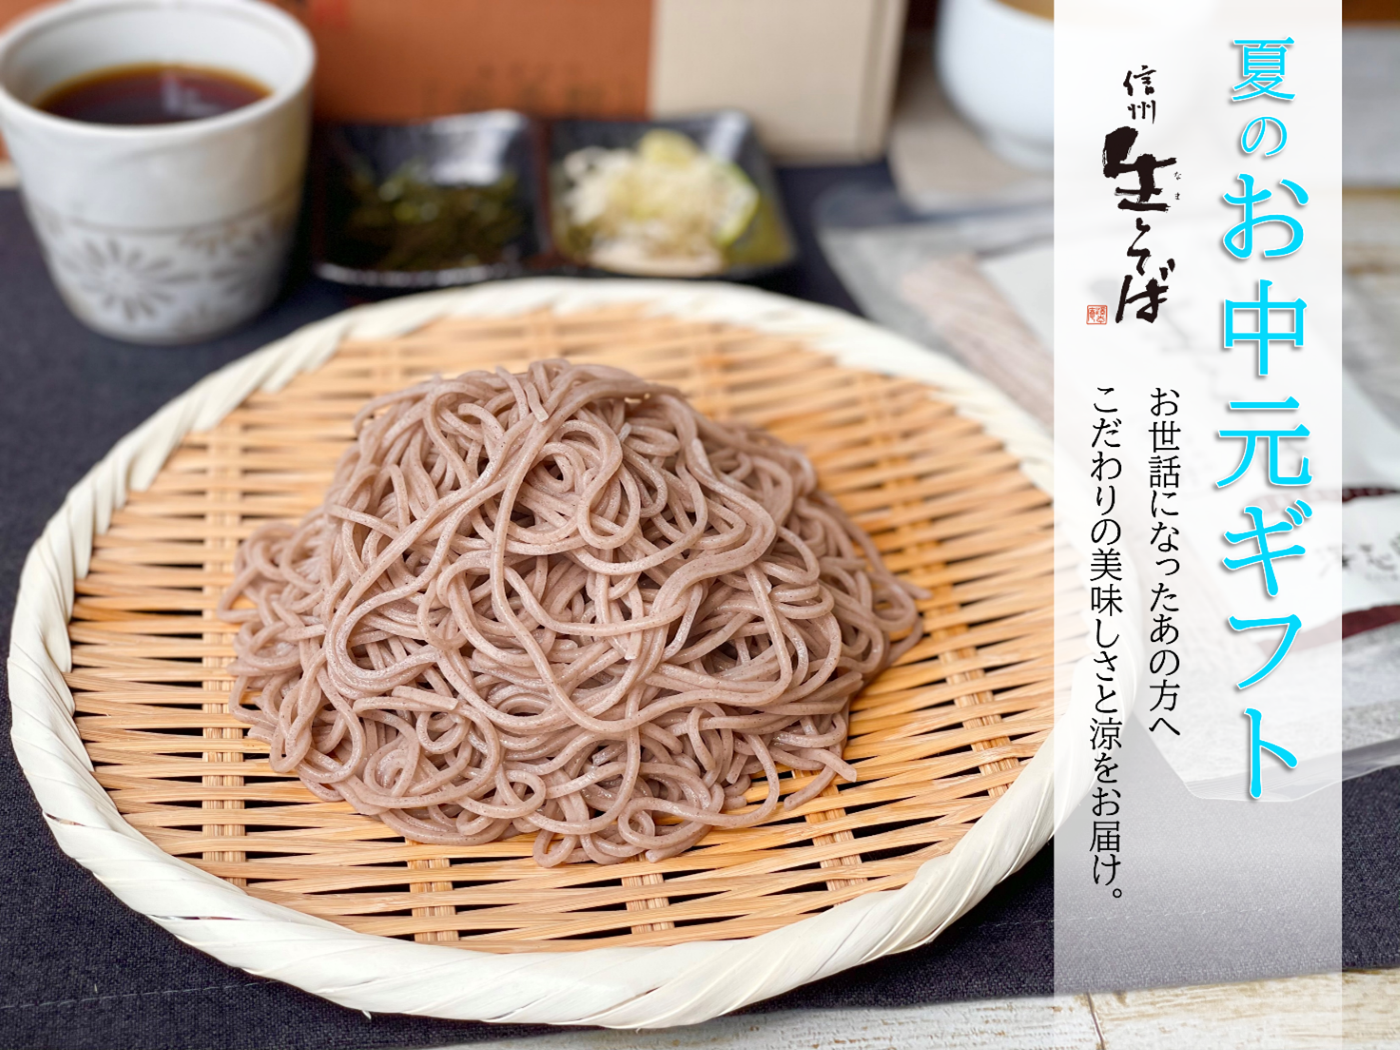 幻の和牛「土佐あかうし」とキャビアを使った究極の冷やしそうめん
　大阪・東三国のステーキ専門店が7月19日提供開始